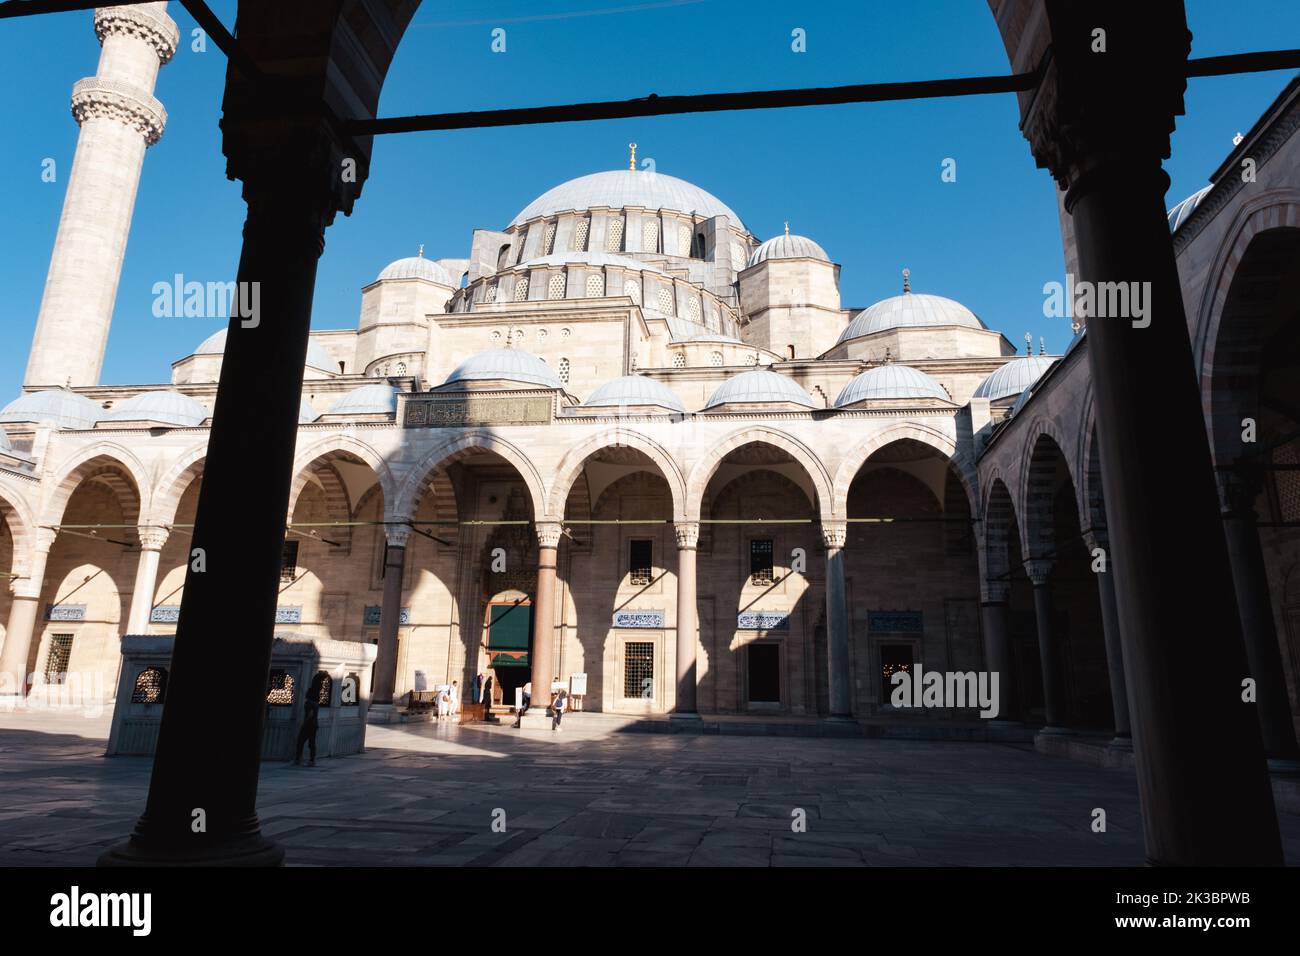 Vista sul cortile e sulla cupola della Moschea di Suleymaniye con cielo blu, vecchia struttura antica, splendidi monumenti con moschea, concetto musulmano e islamico Foto Stock